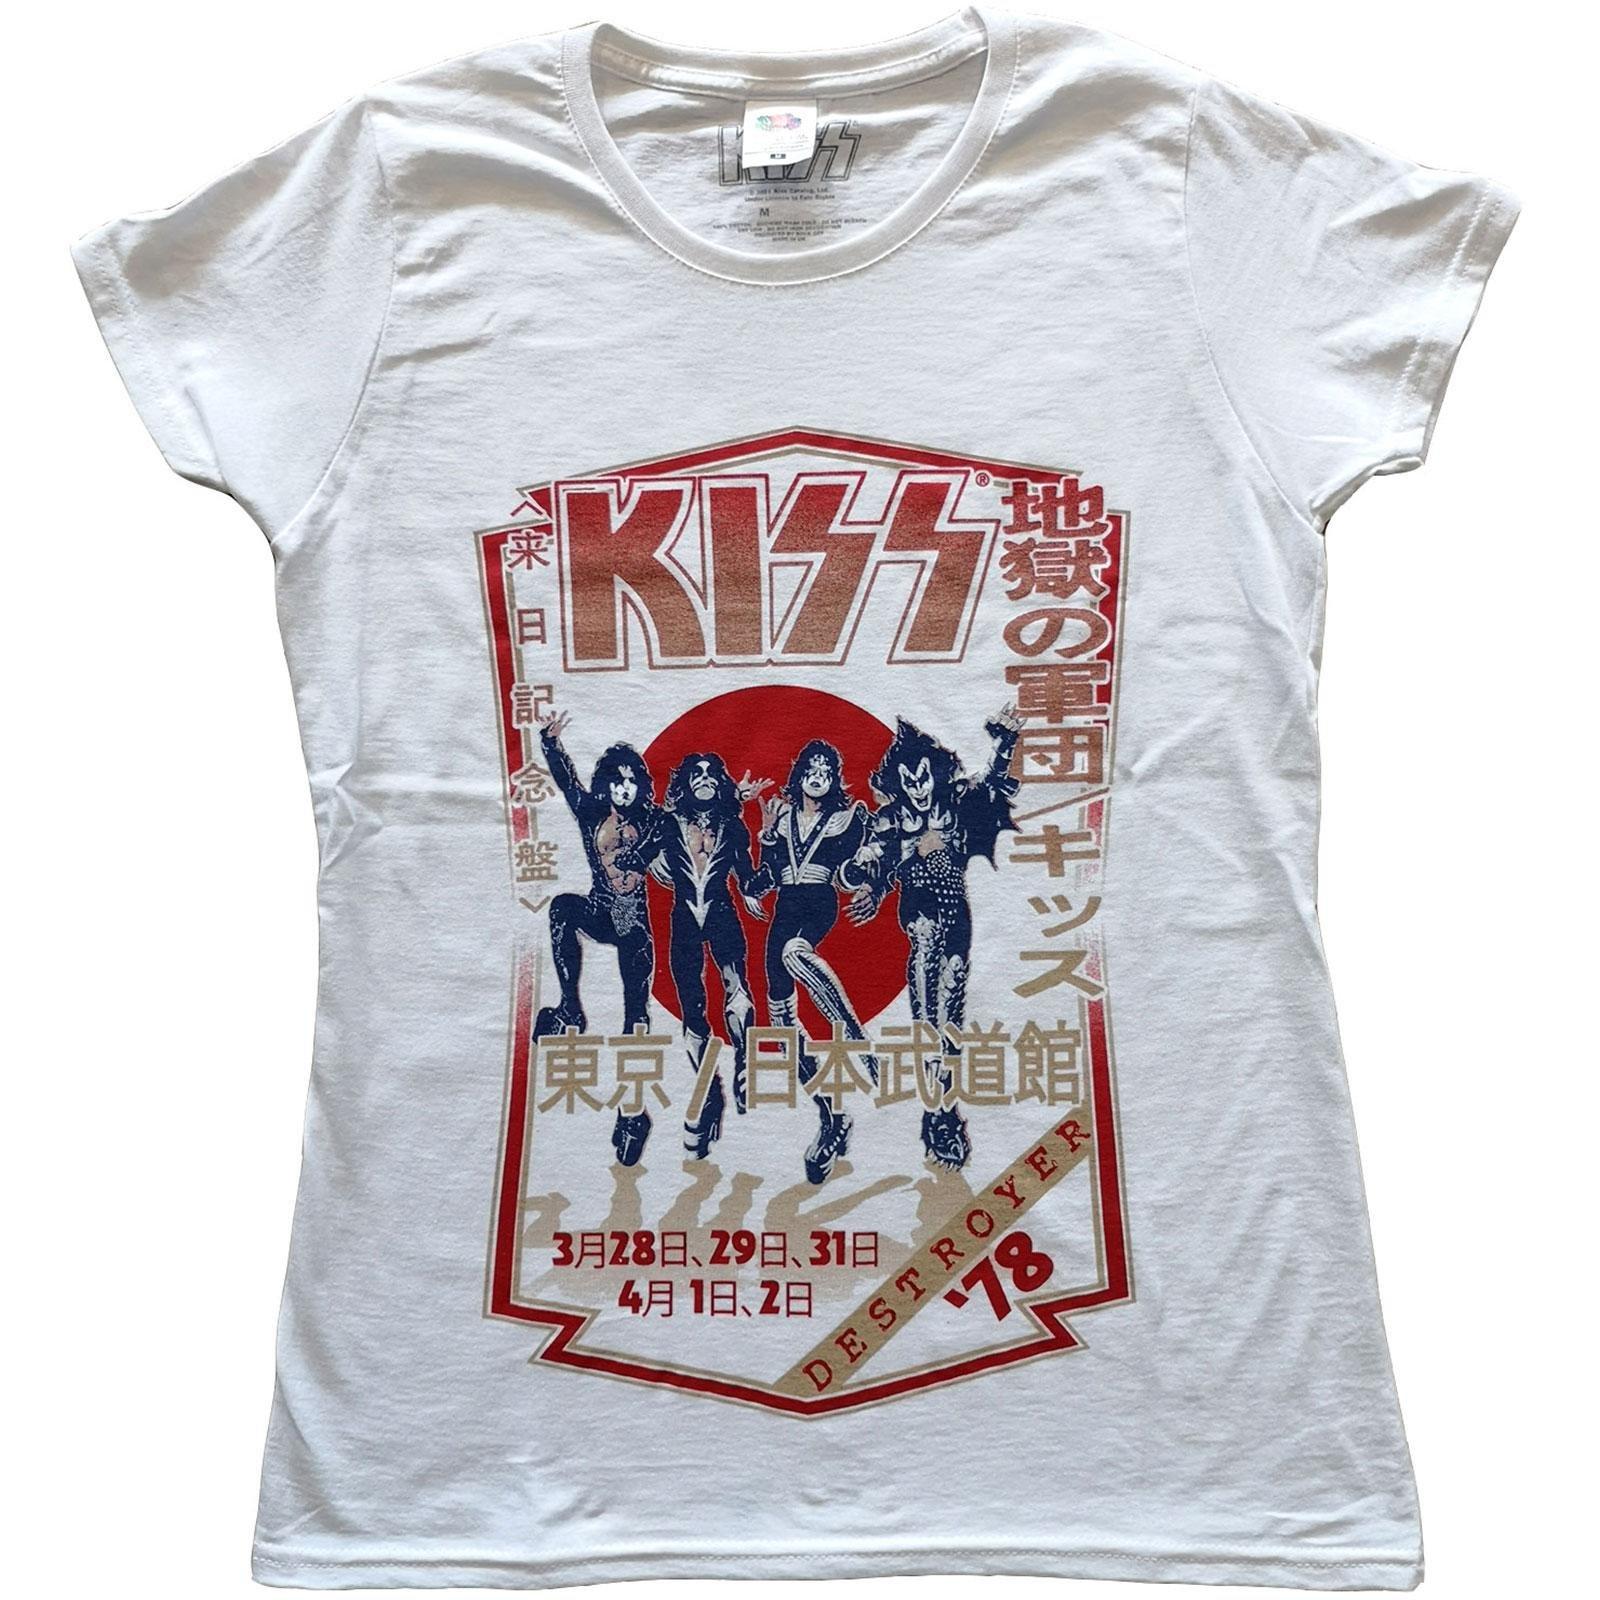 Destroyer Tour 78 Tshirt Damen Weiss XL von KISS